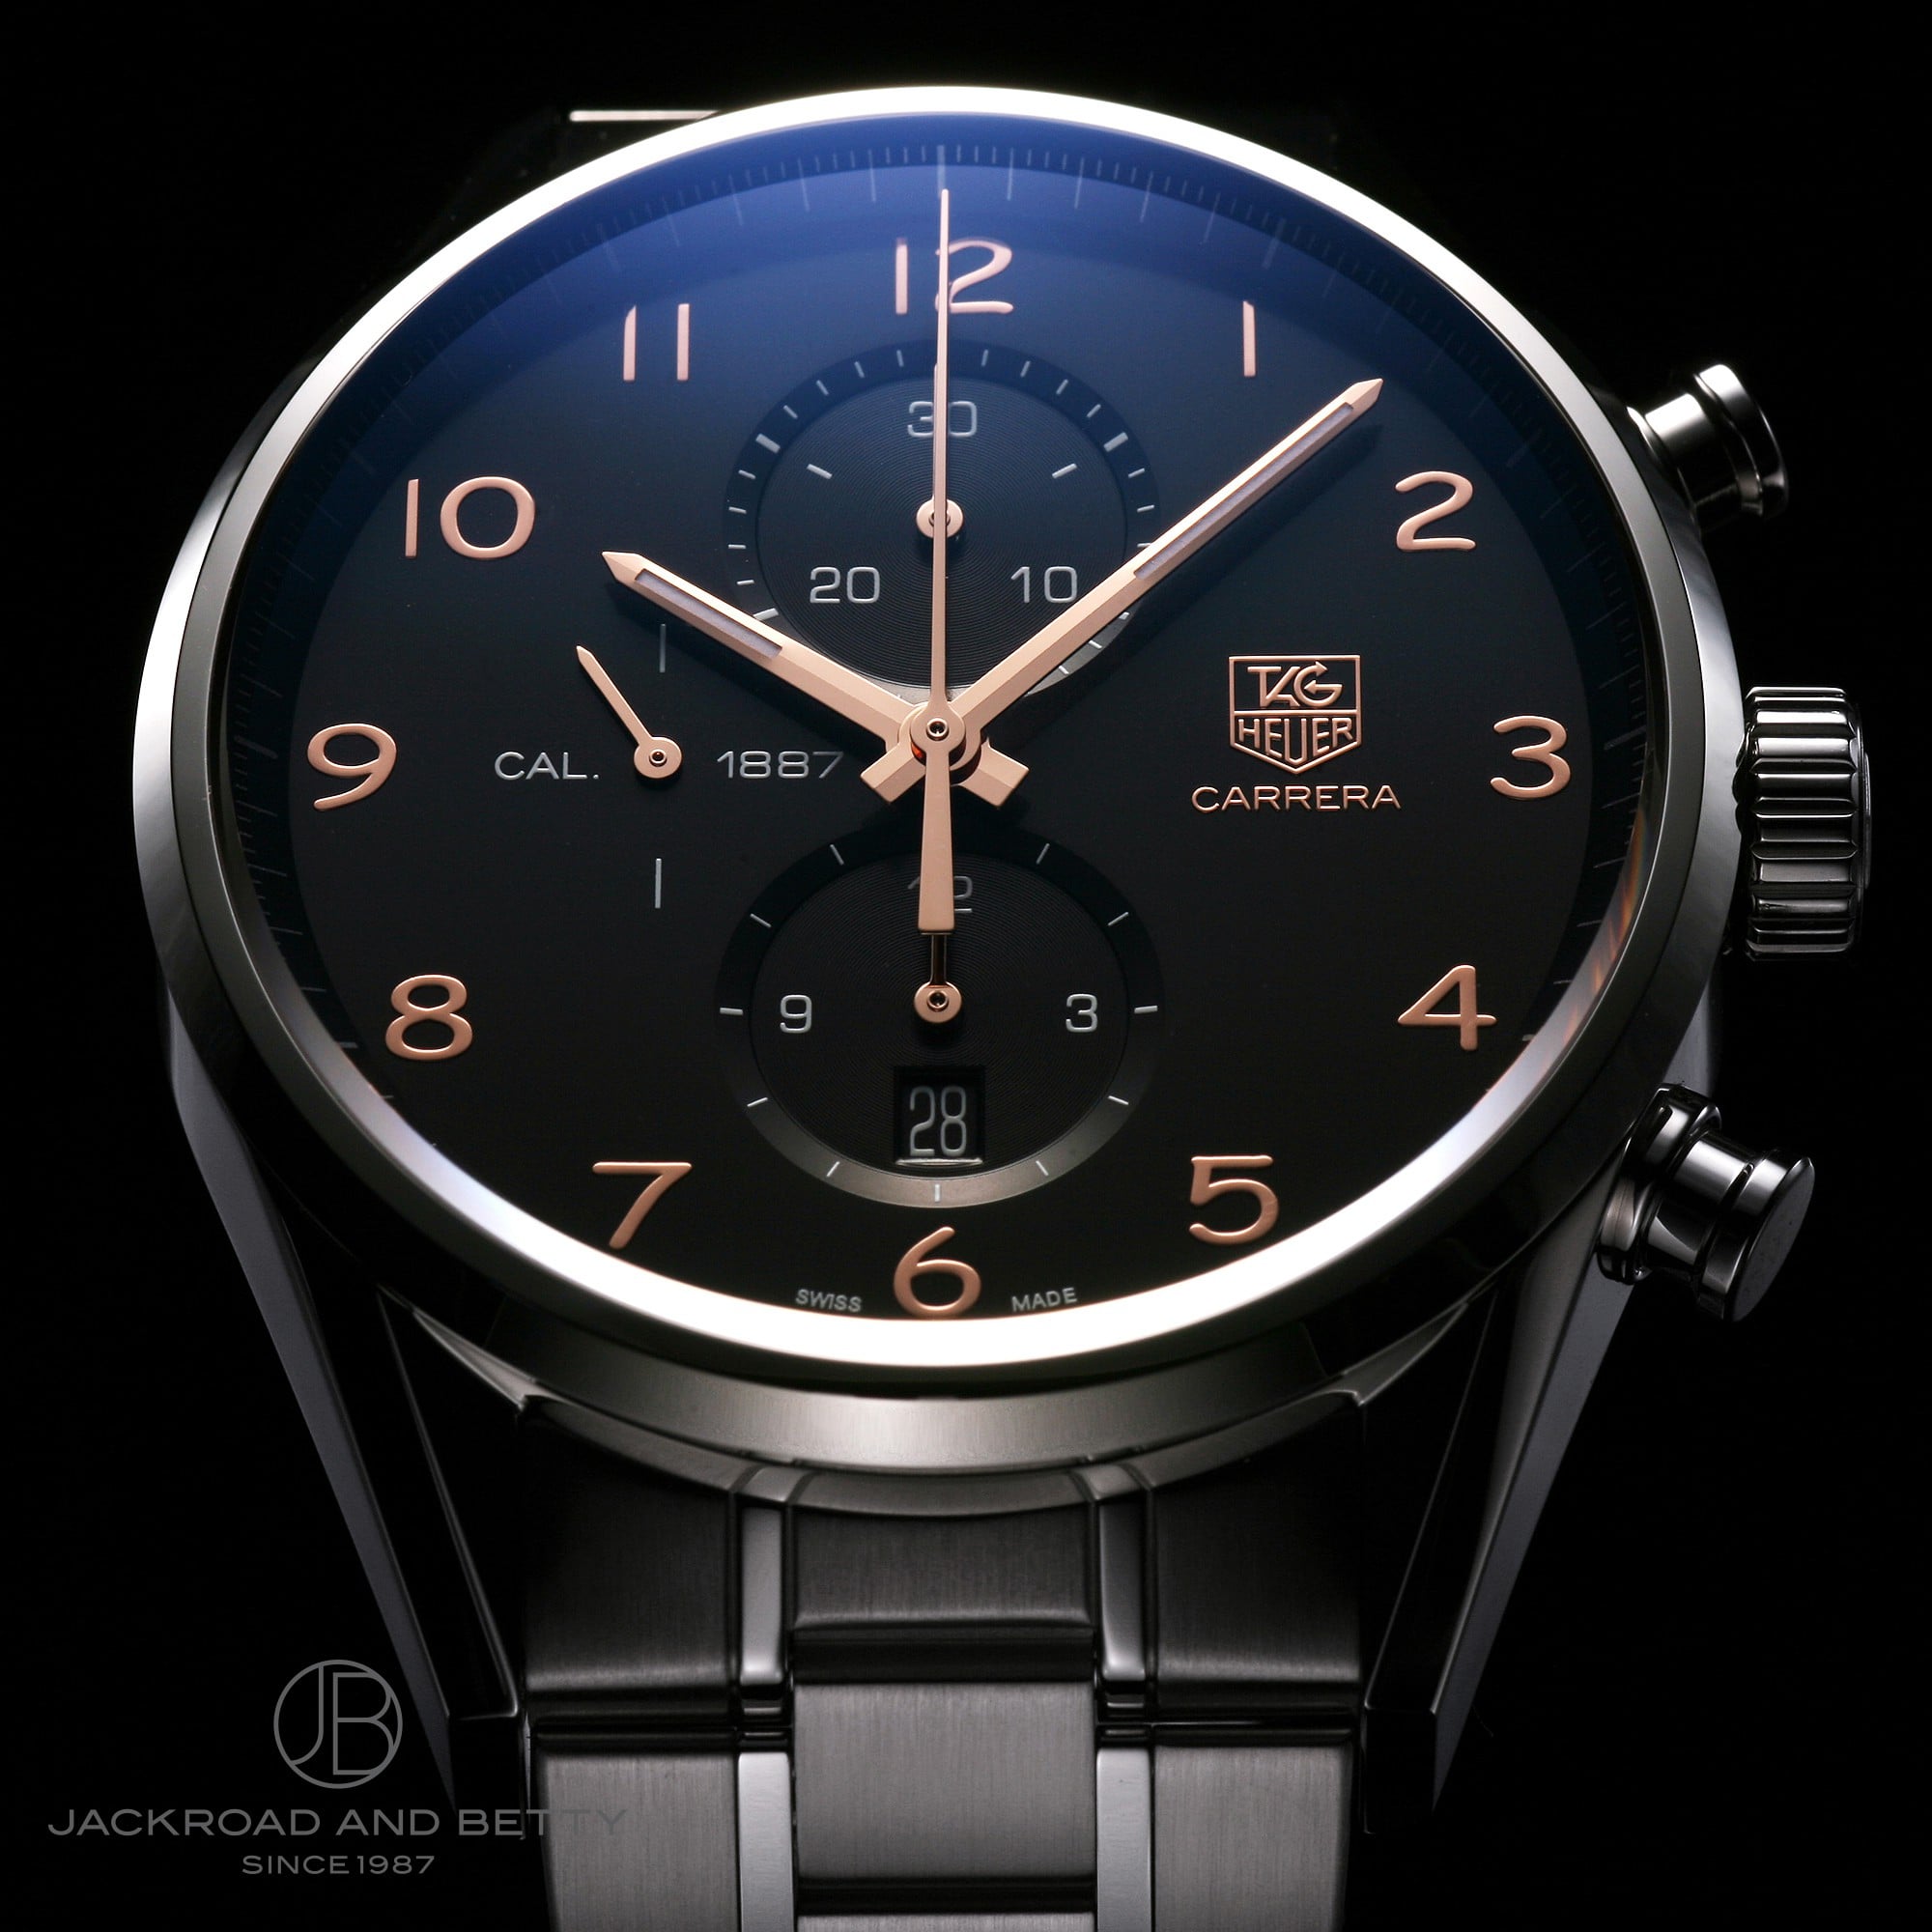 タグホイヤー 腕時計 CAR2014-0 メンズ 黒